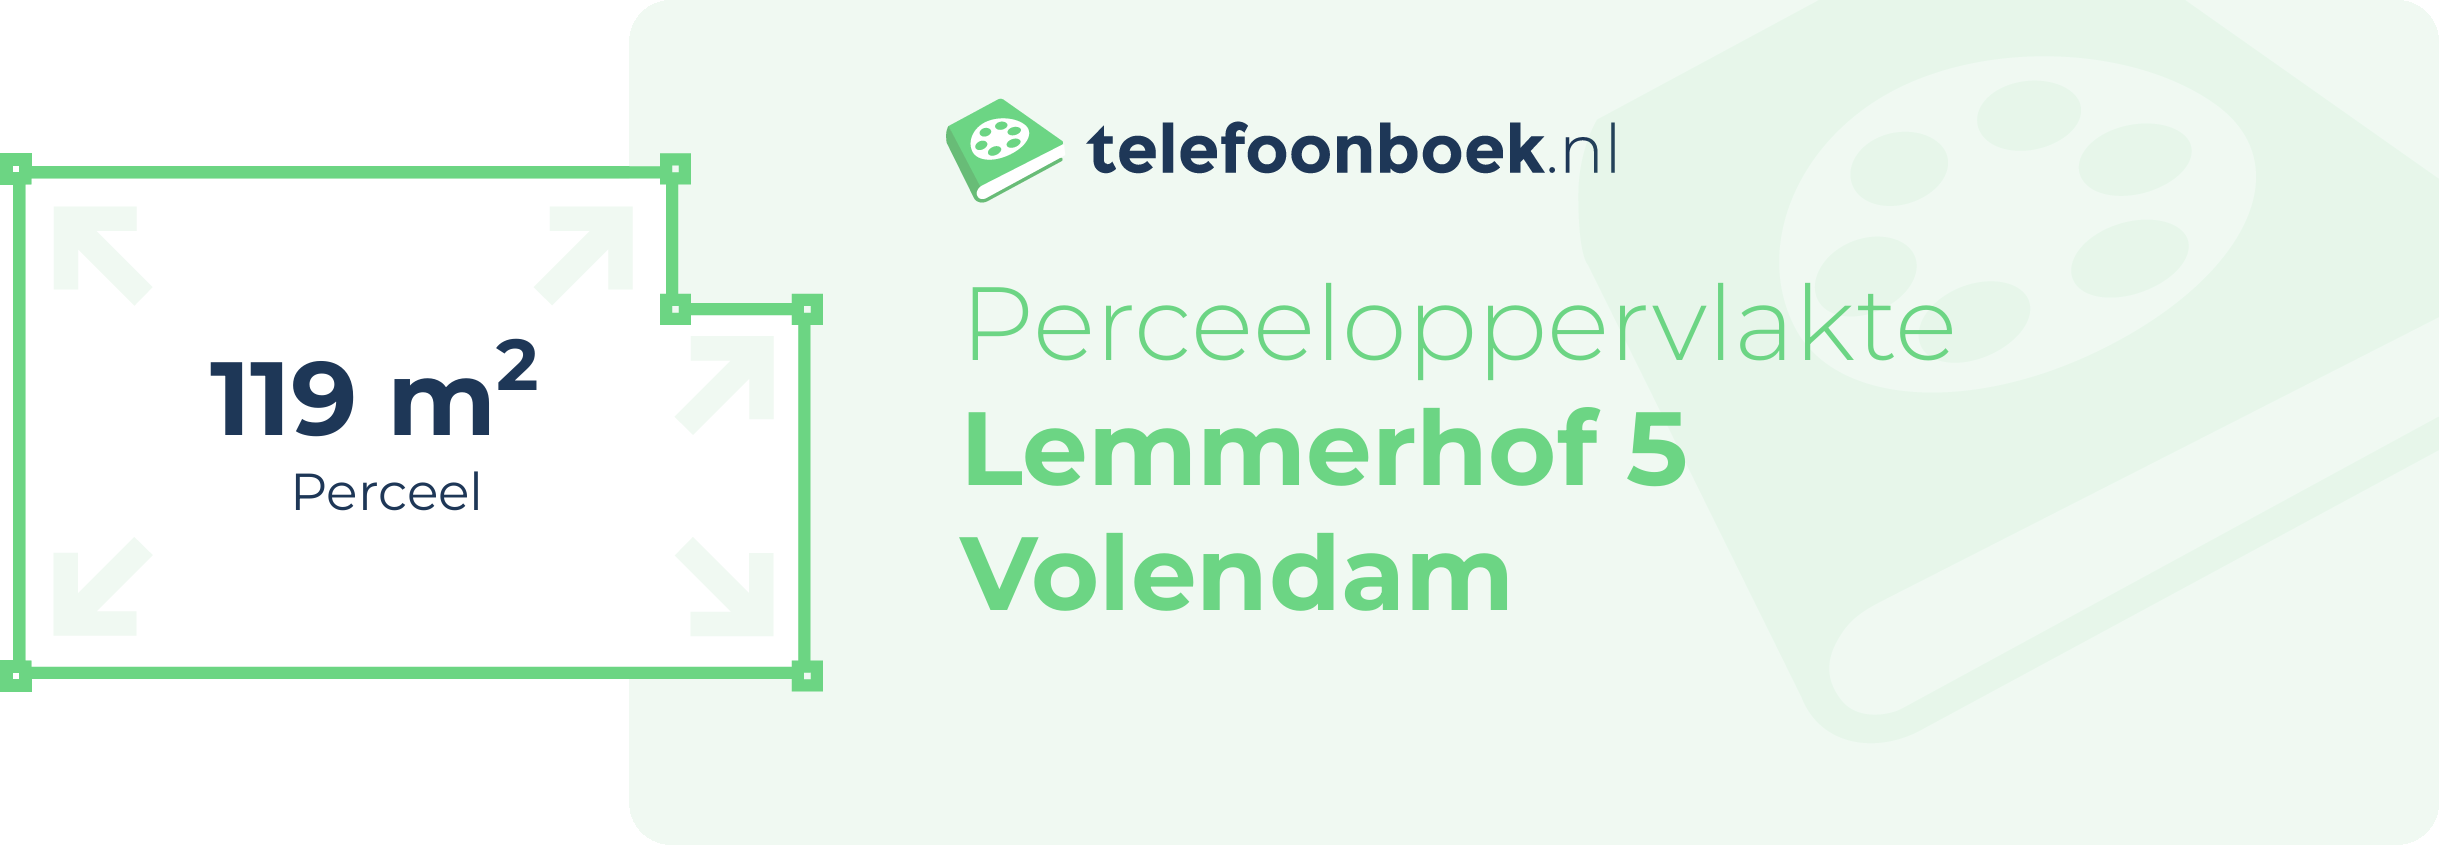 Perceeloppervlakte Lemmerhof 5 Volendam